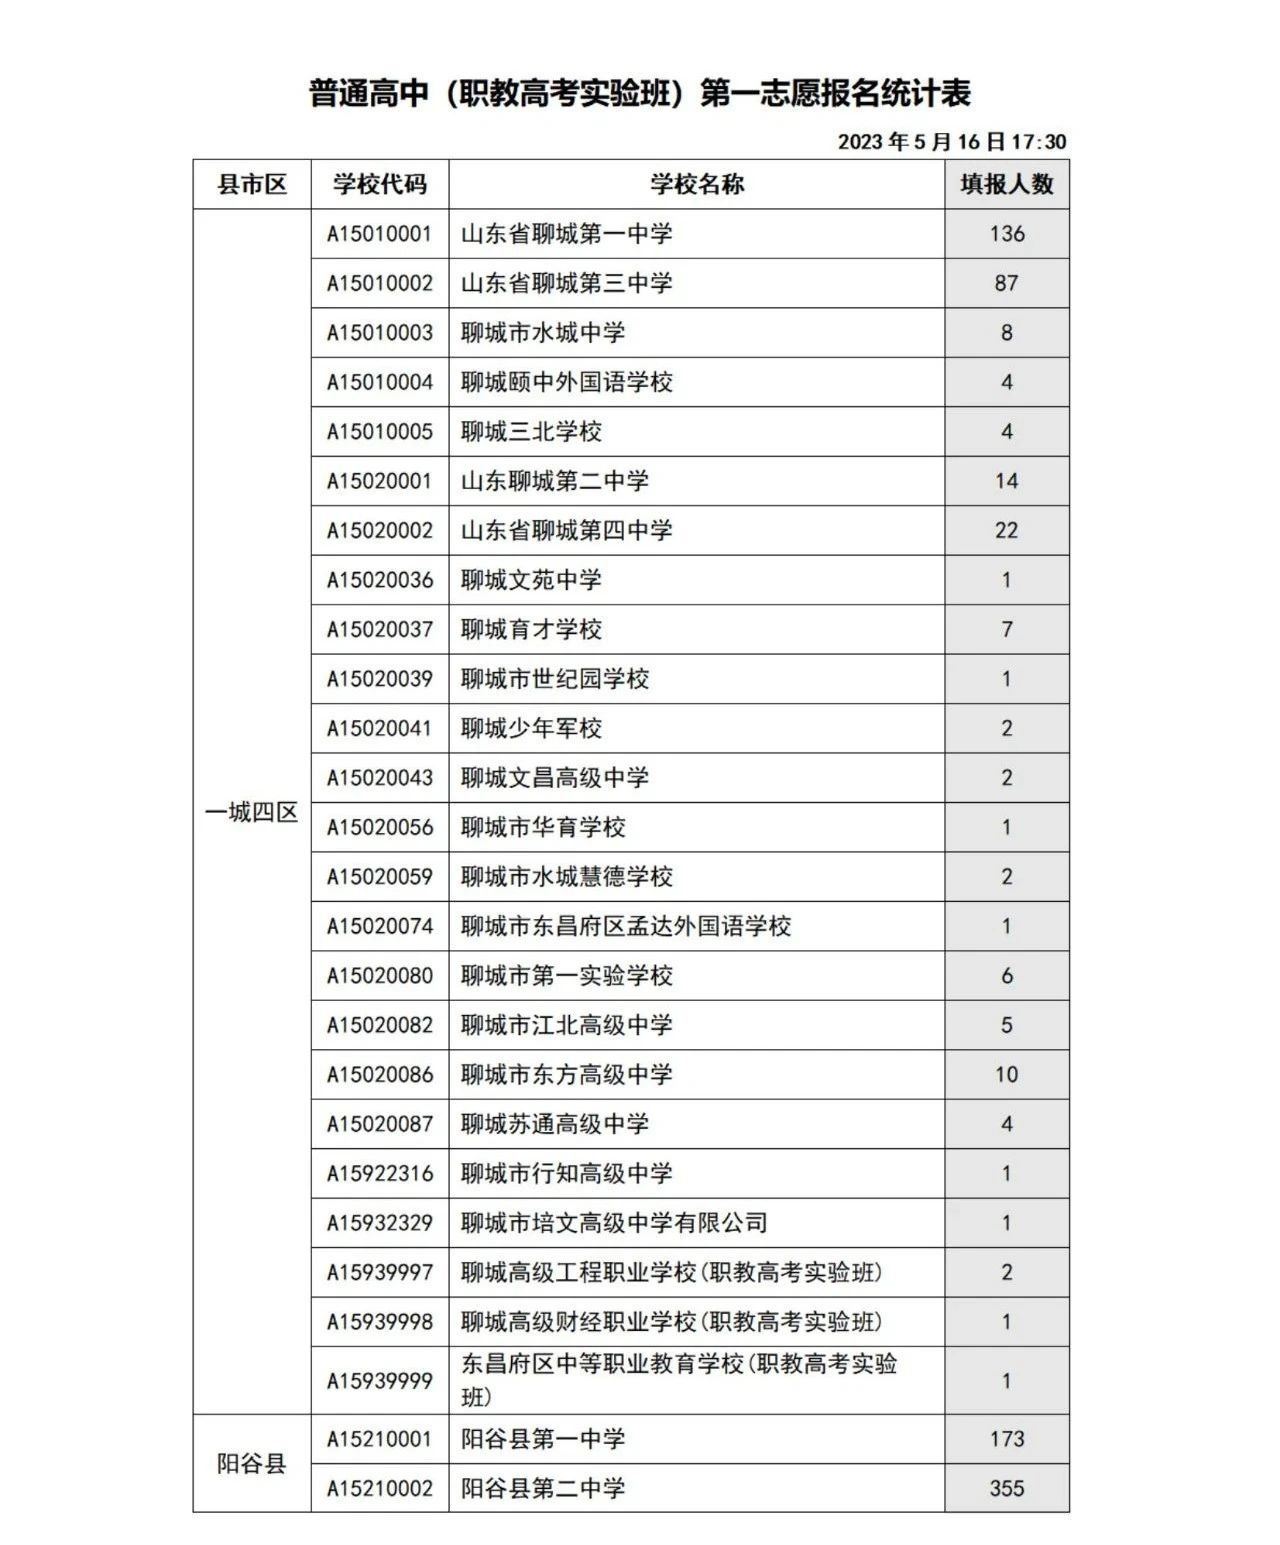 聊城2023年中考普通高中职教高考实验班第一志愿报名统计表5月16日